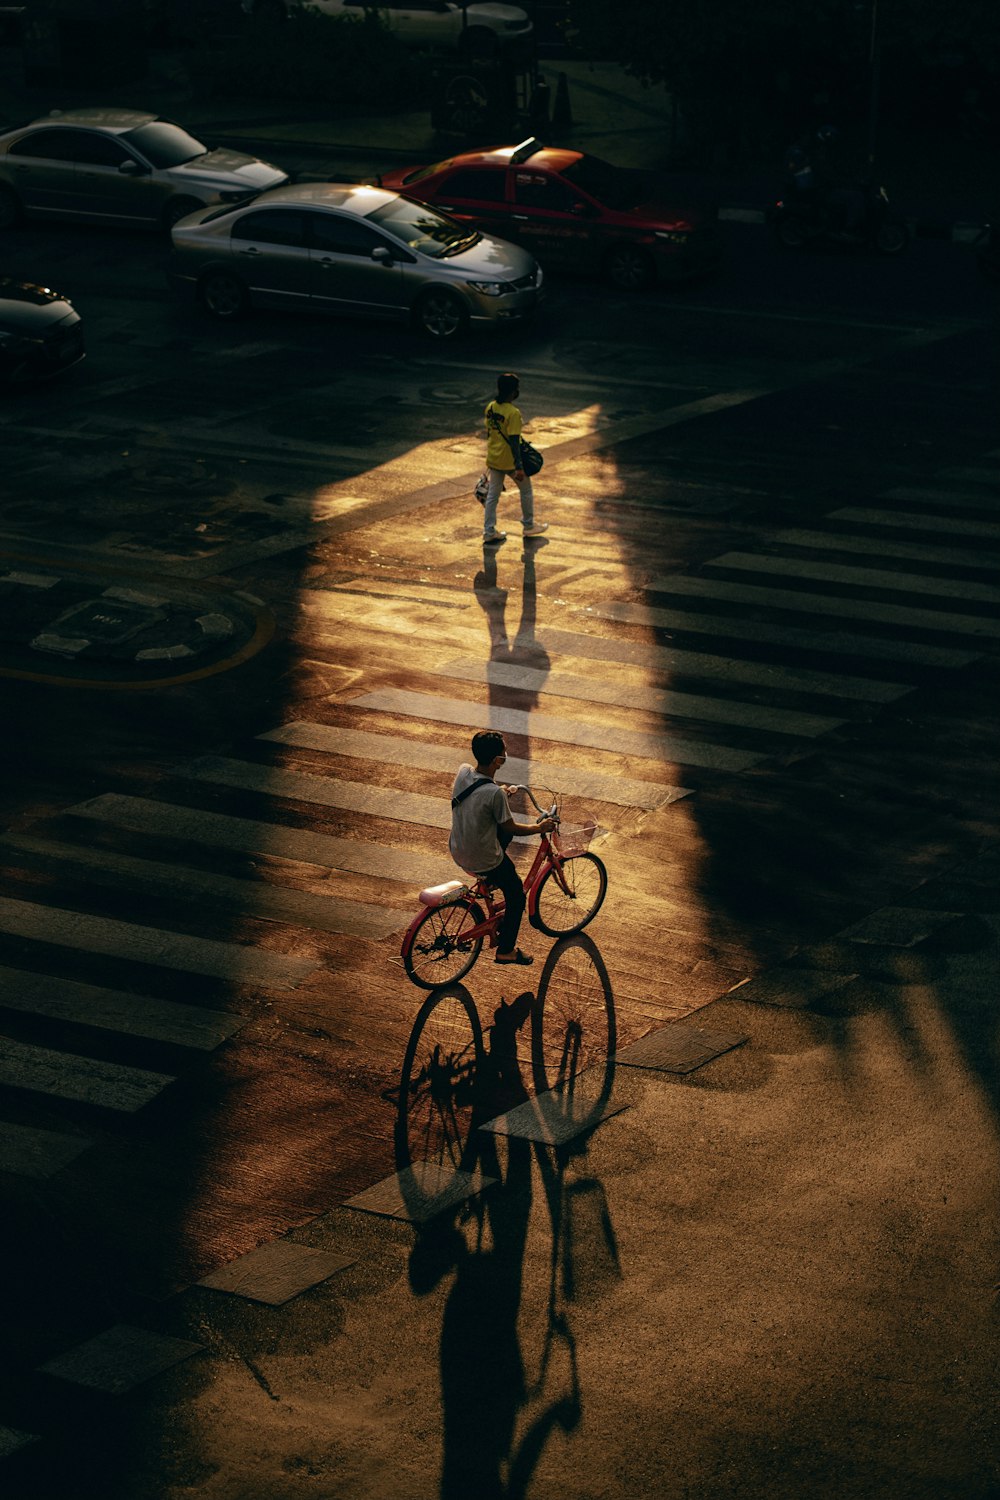 Muchacha en camisa blanca y pantalones montando en bicicleta en la carretera durante la noche